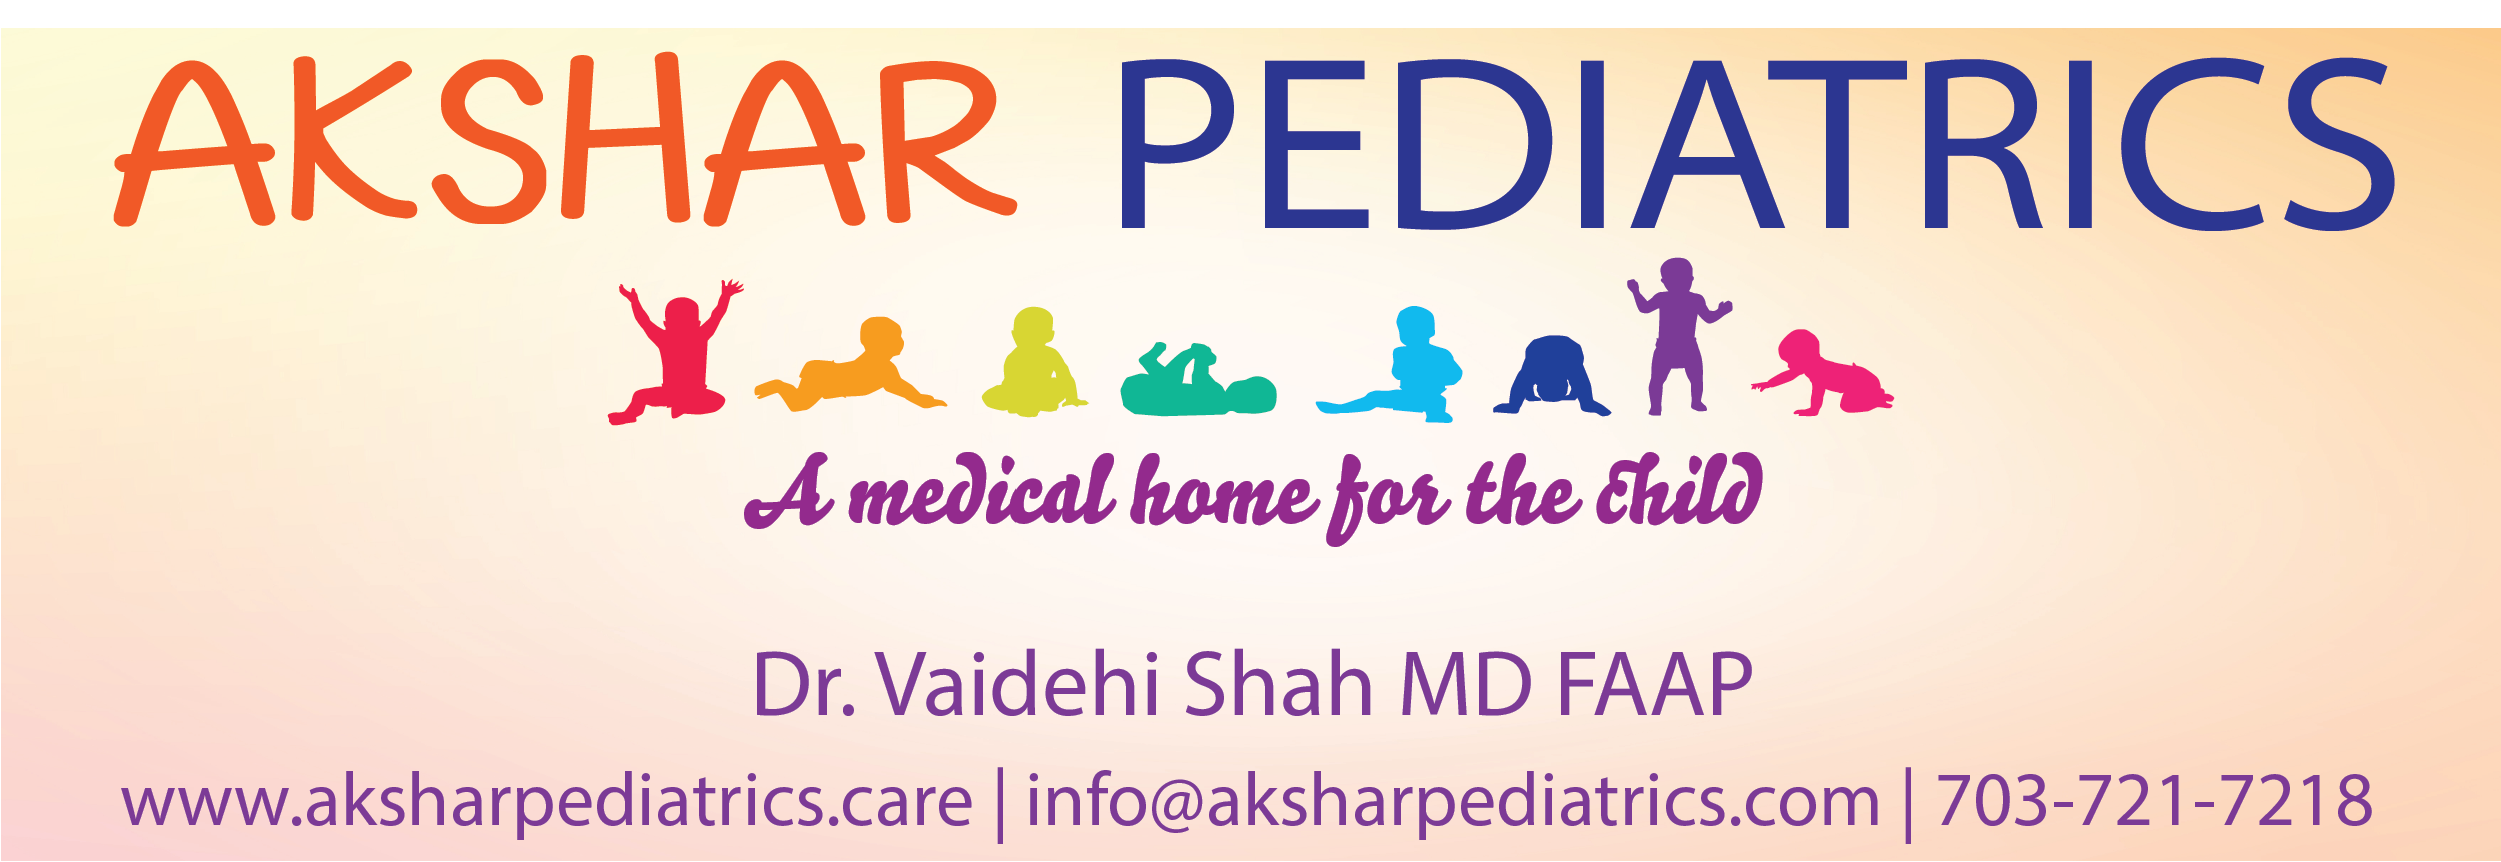 Akshar-Pediatrics-Logo.png